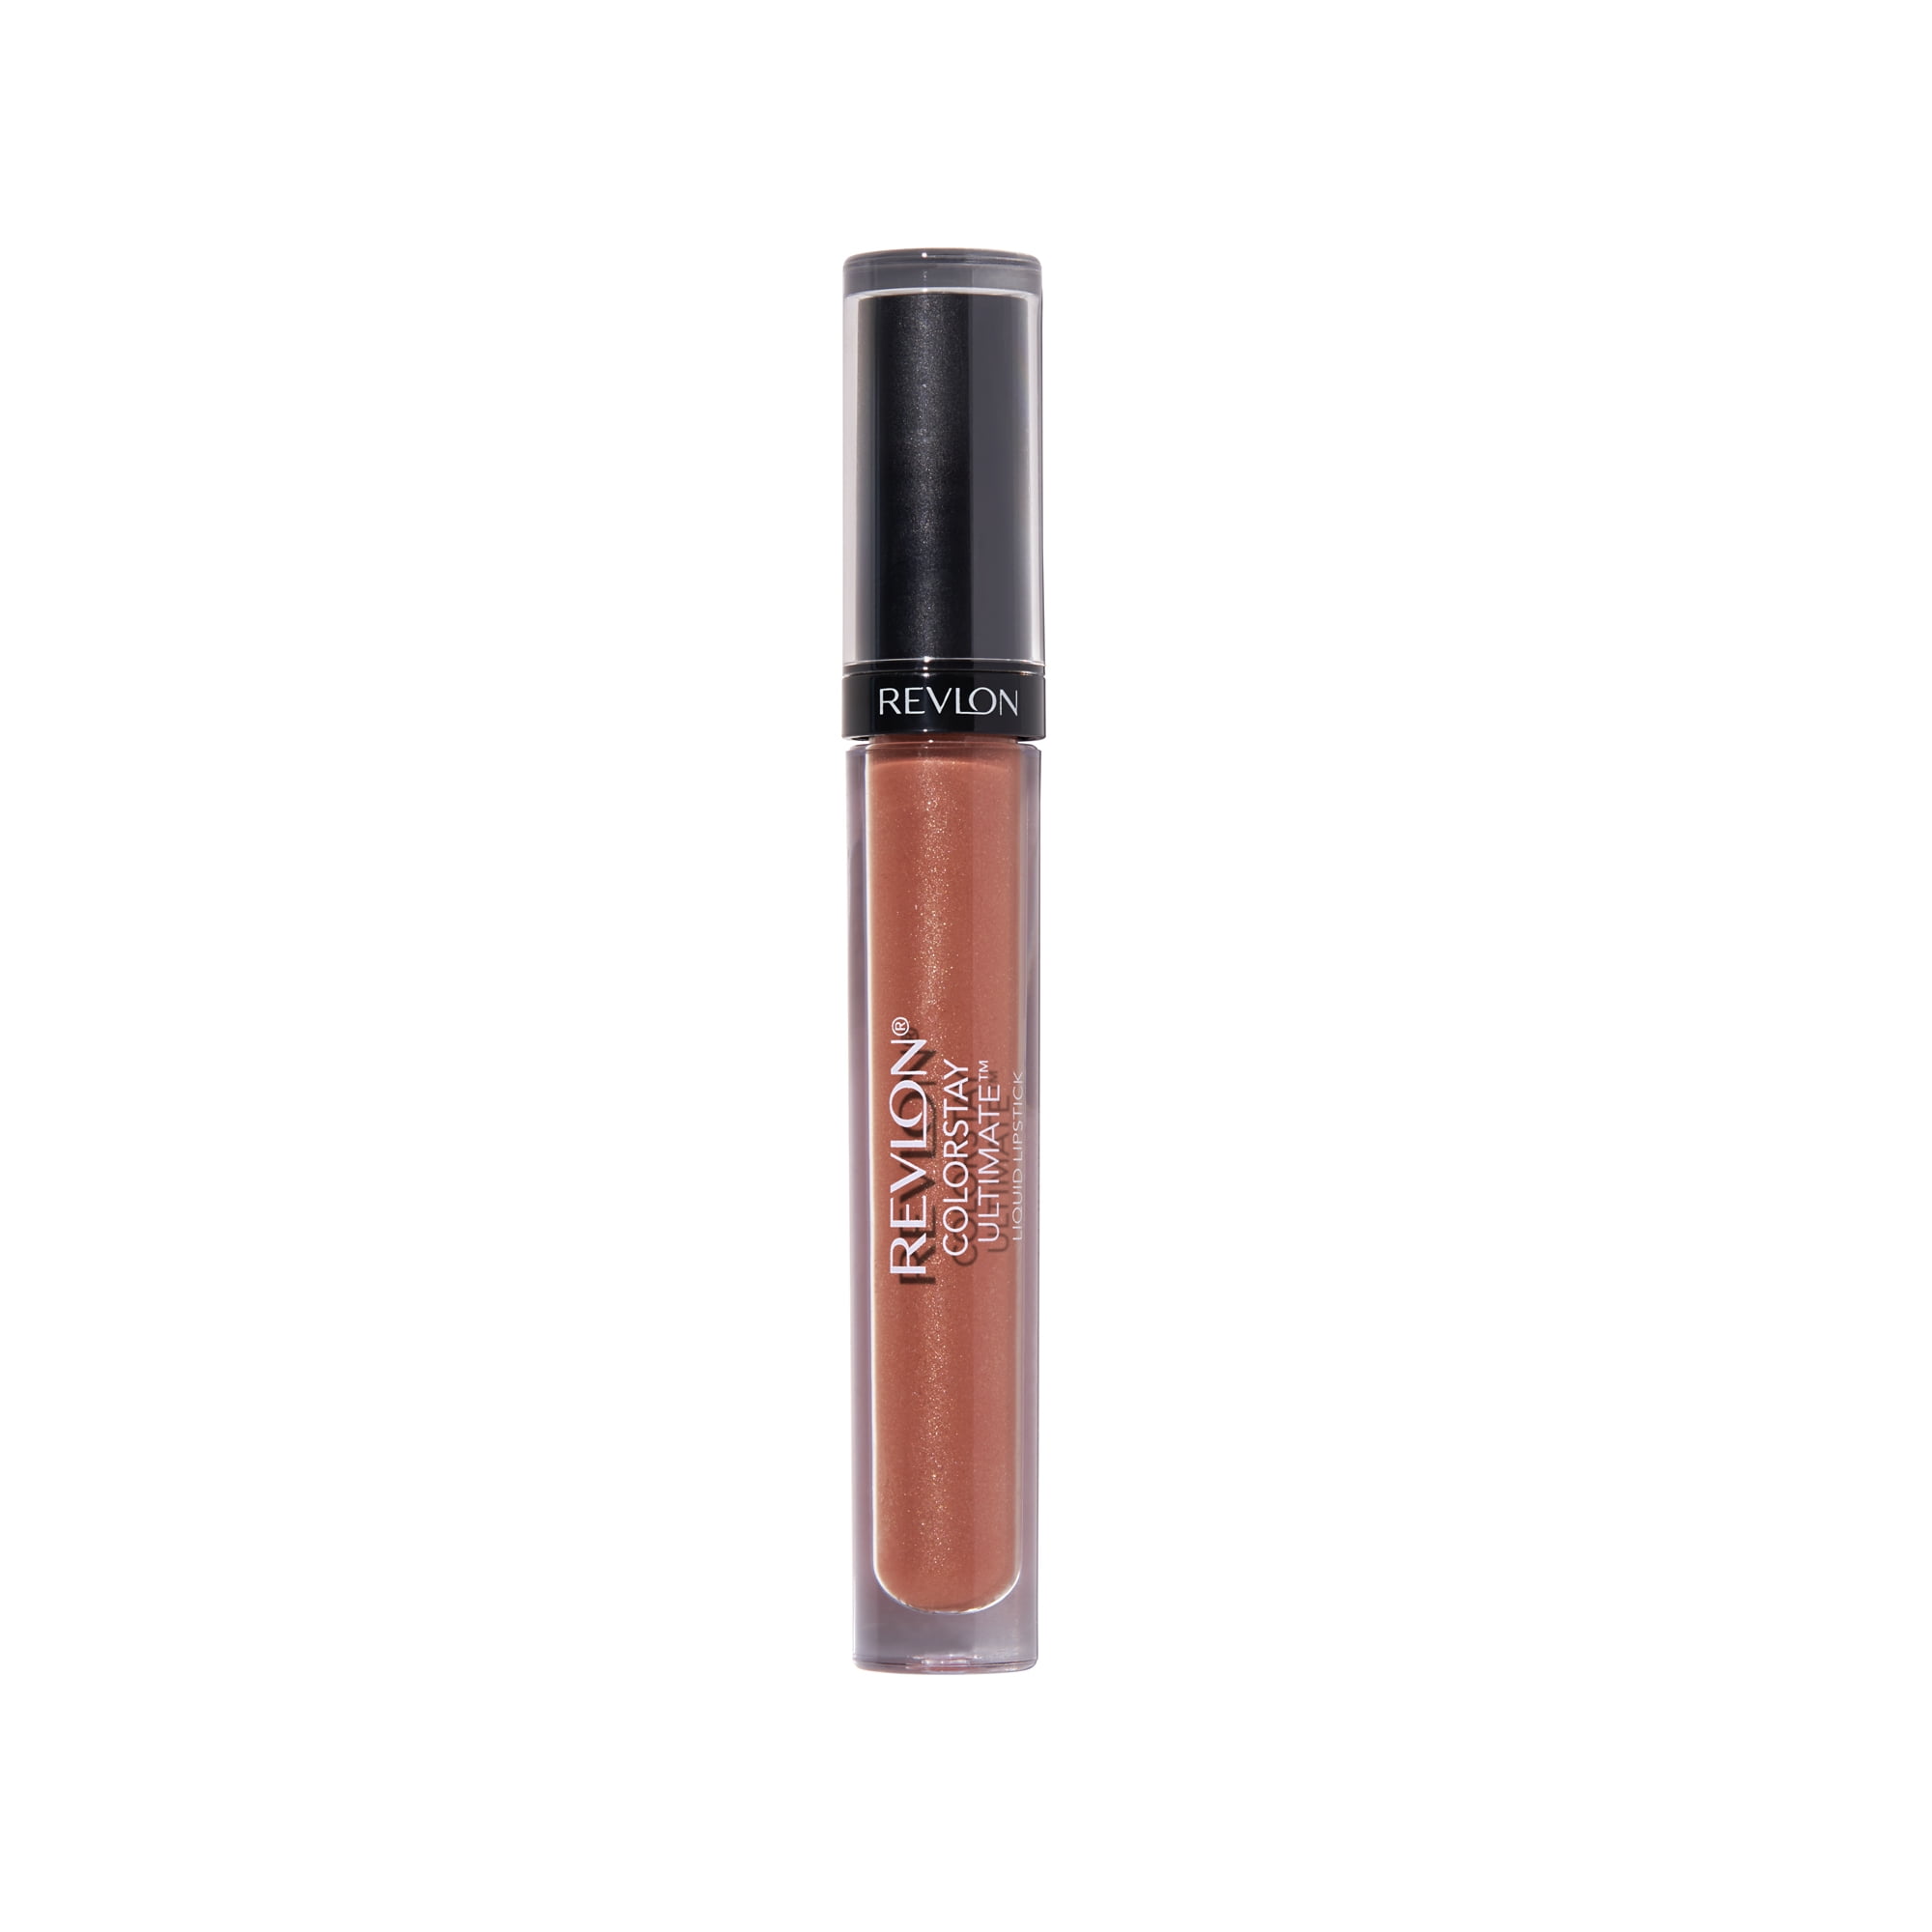 Revlon ColorStay Ultimate Liquid Lipstick, 075 #1 Nude, 0.1 fl oz